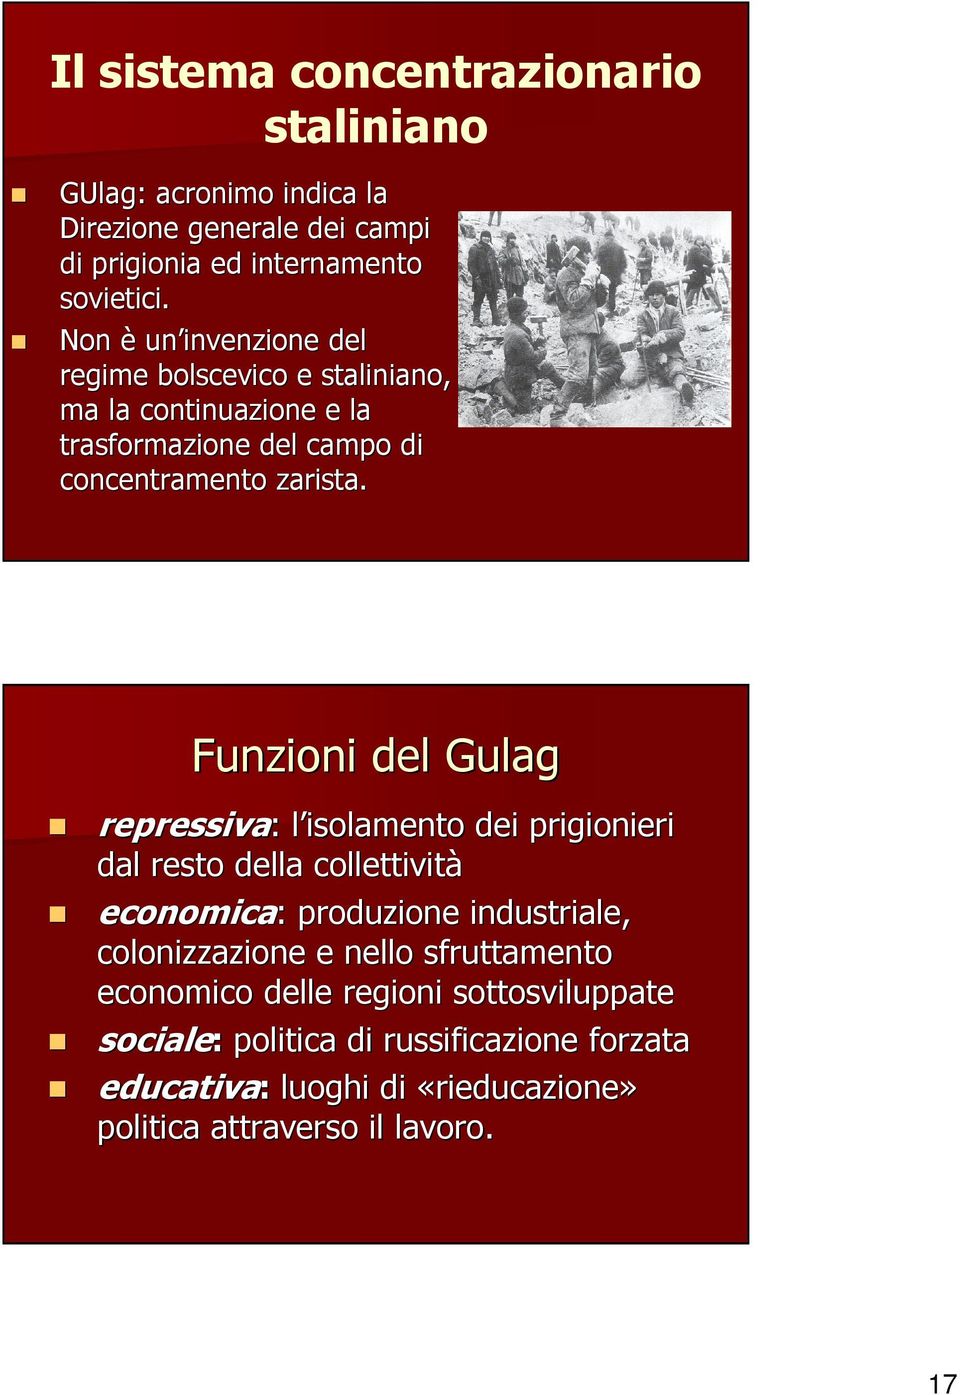 Funzioni del Gulag repressiva: : l isolamento dei prigionieri dal resto della collettività economica: : produzione industriale, colonizzazione e